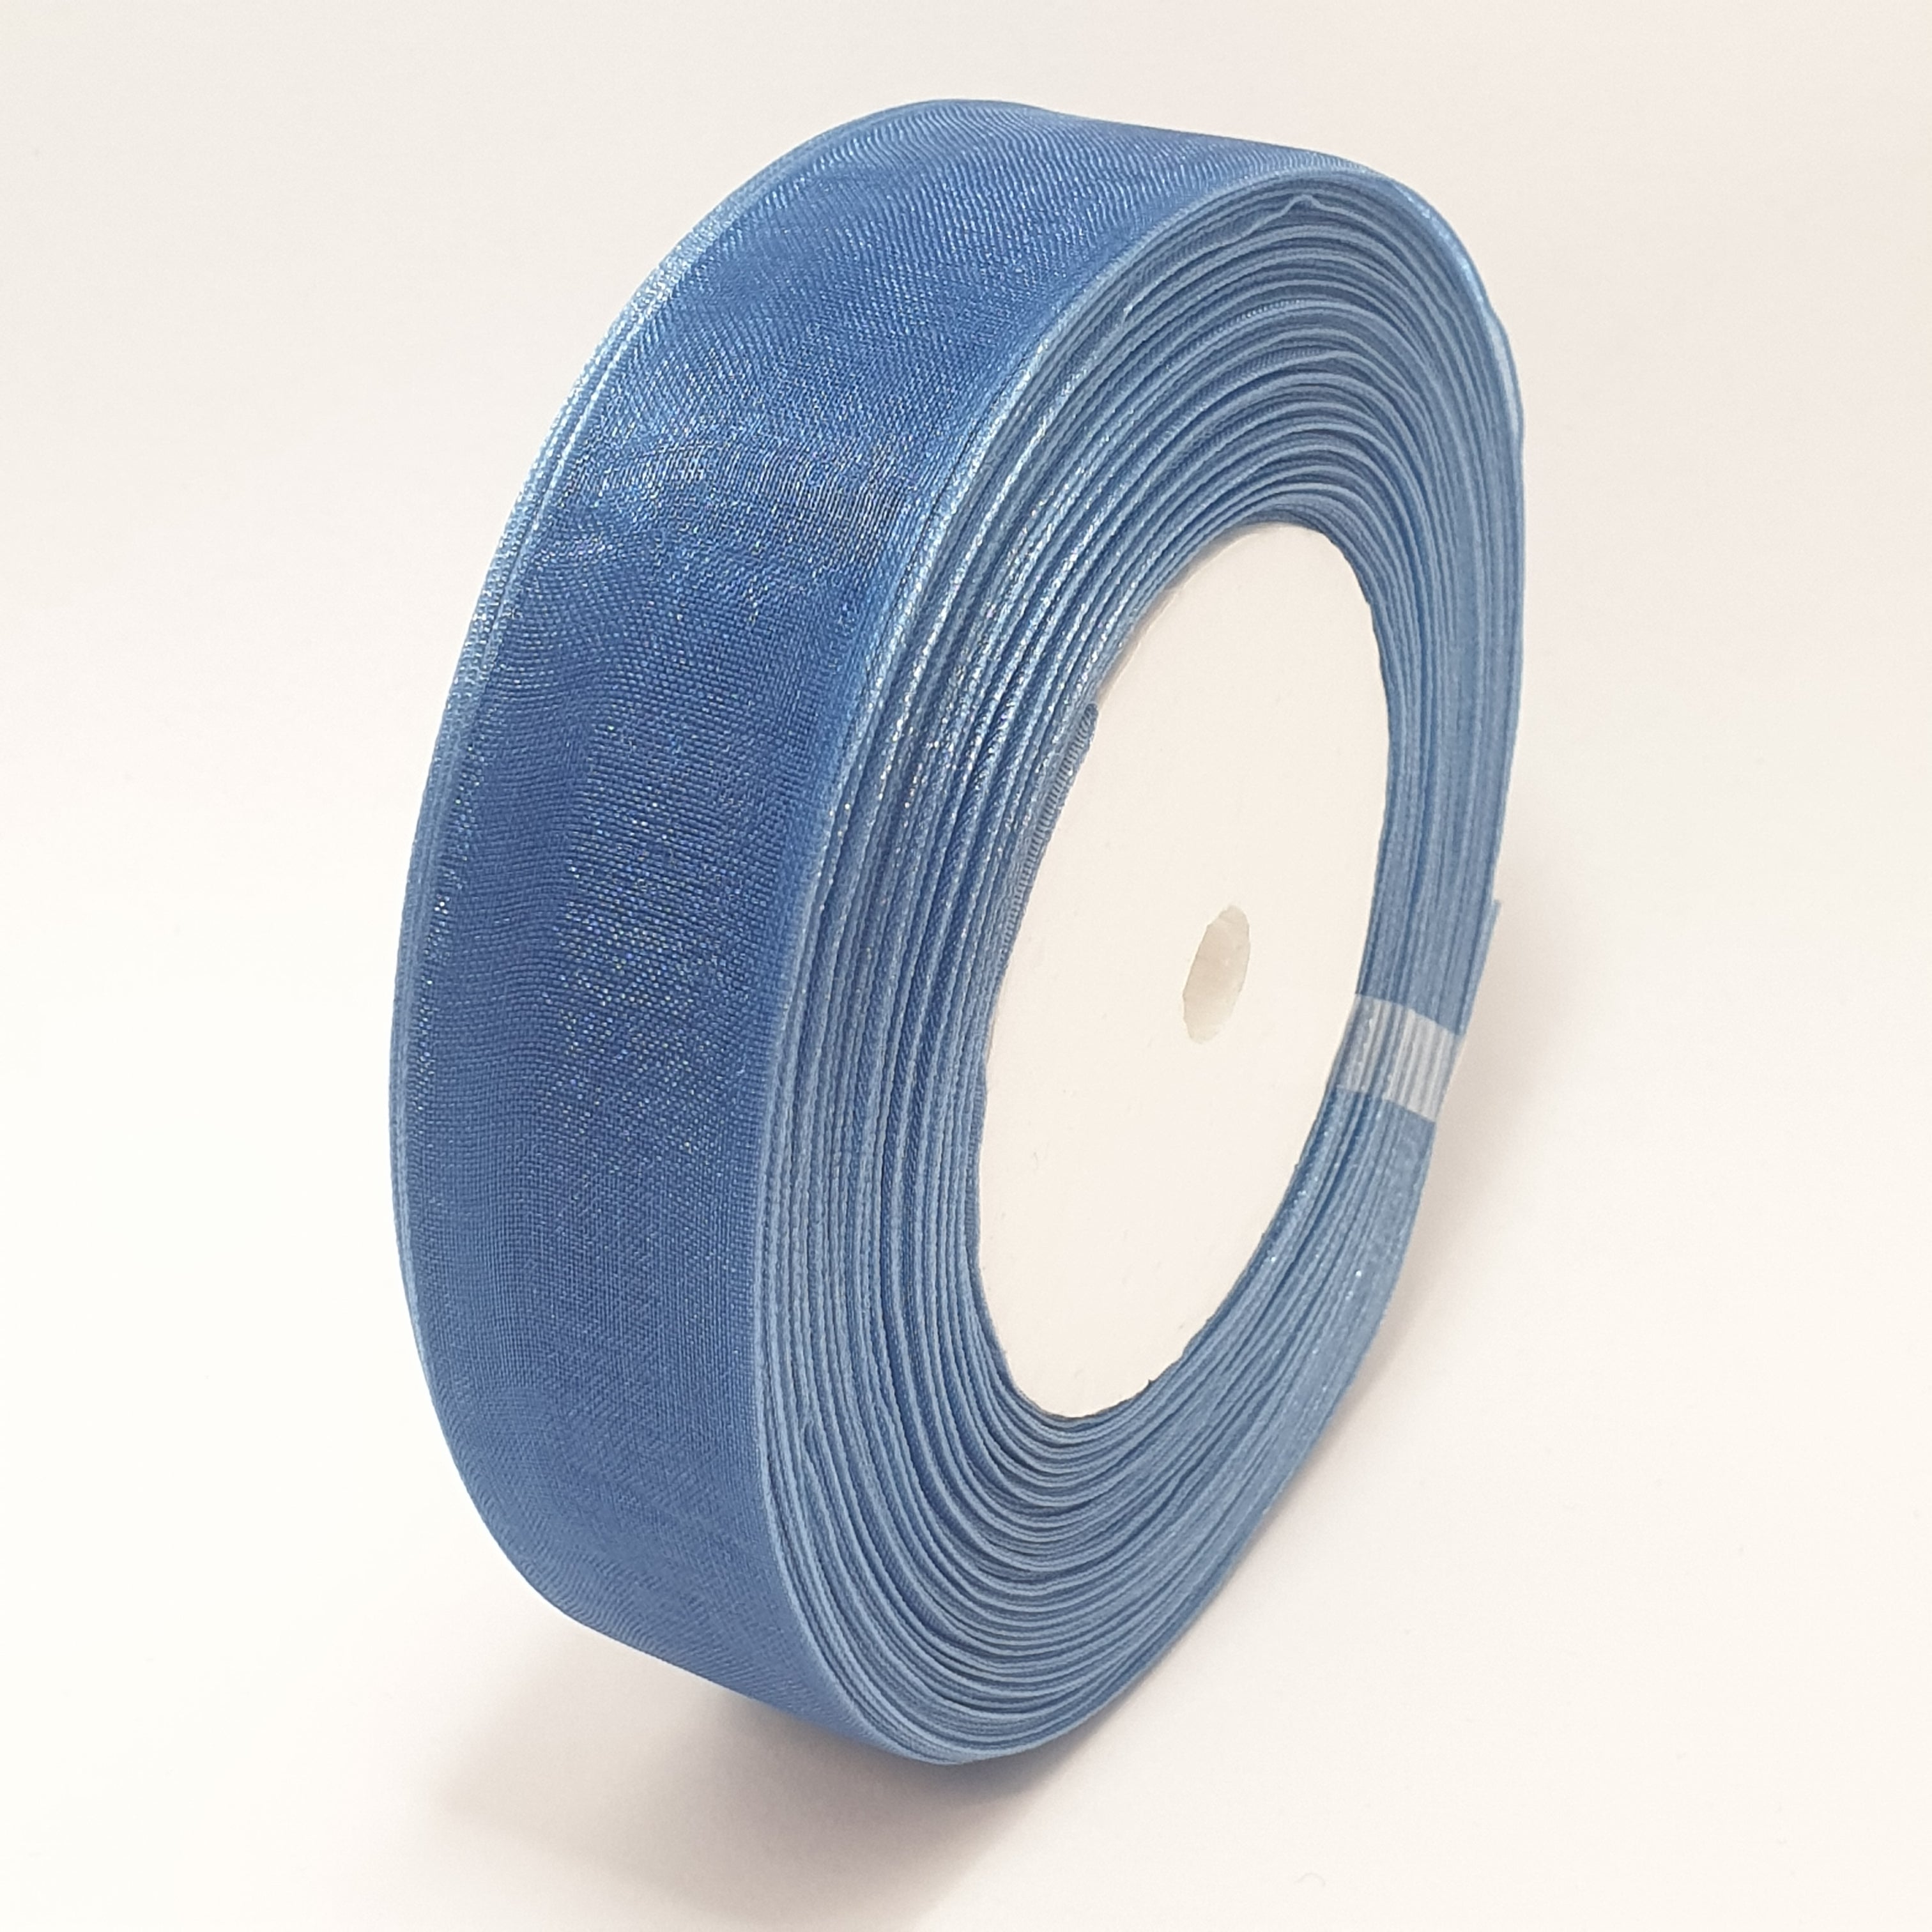 MajorCrafts 25mm 45metres Washed Blue Sheer Organza Fabric Ribbon Roll R1070